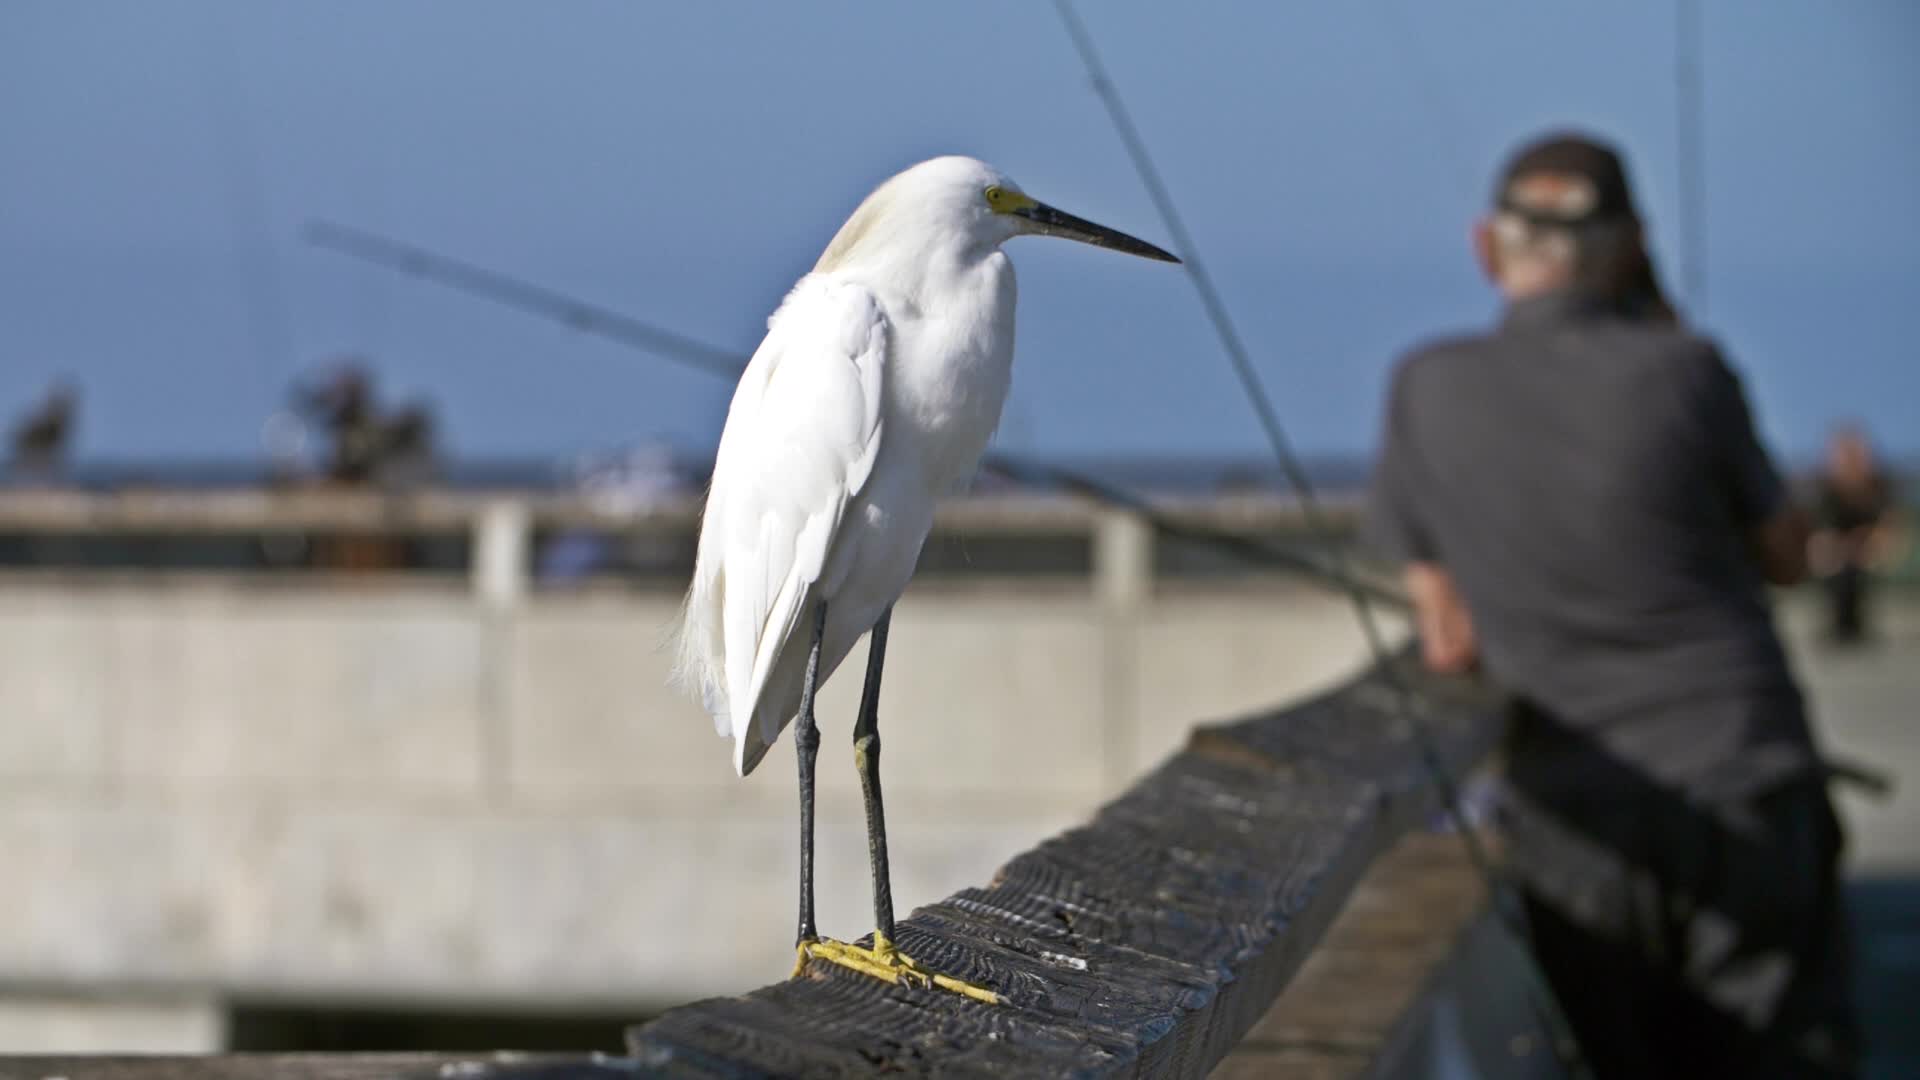 Snowy Egret on Fishing Pier